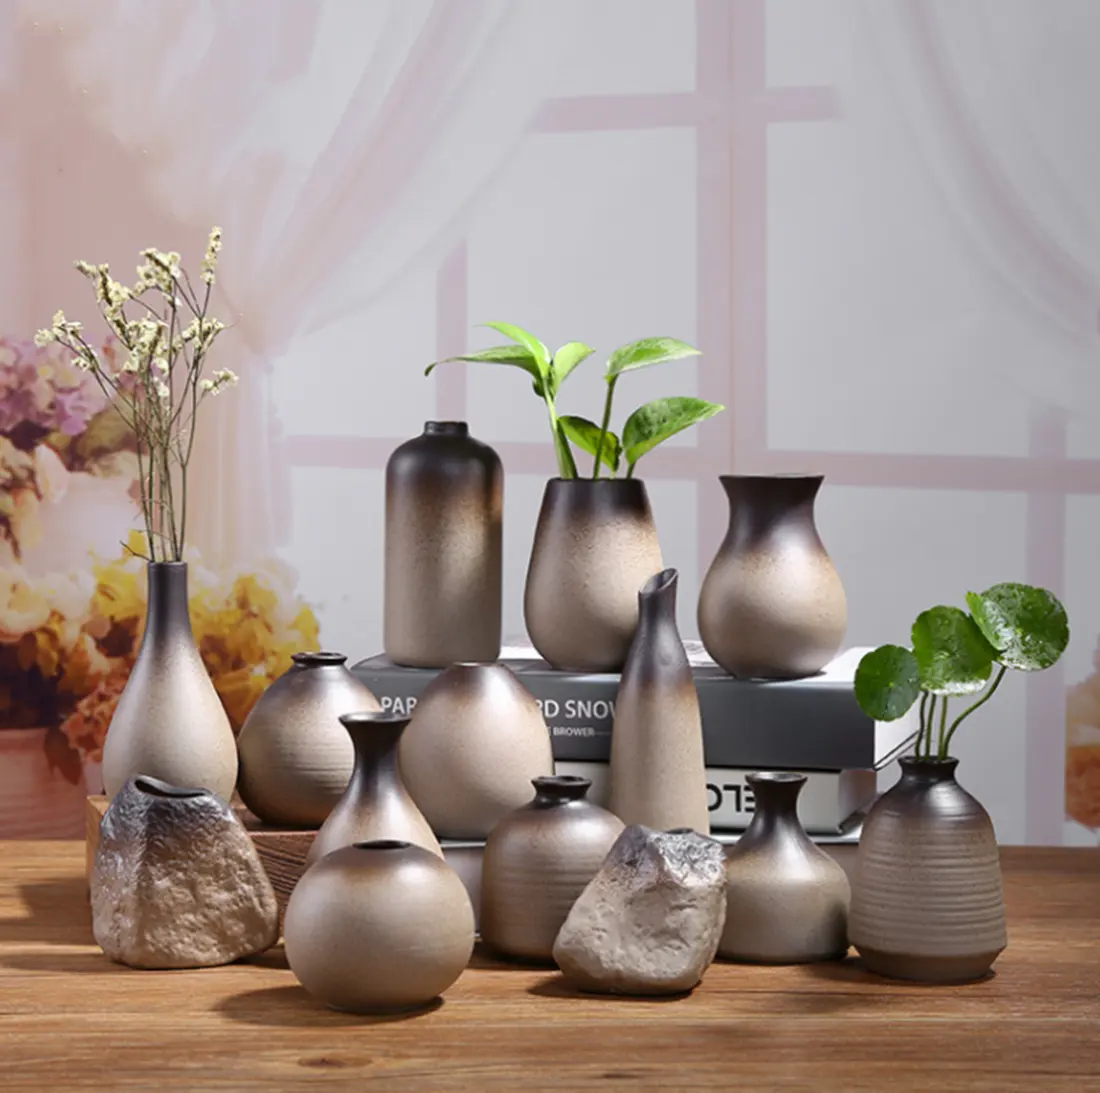 Pot Tembikar Buatan Tangan, Vas Keramik Dekorasi Zen Pengaturan Bunga Hidroponik Porselen Pot Tembikar